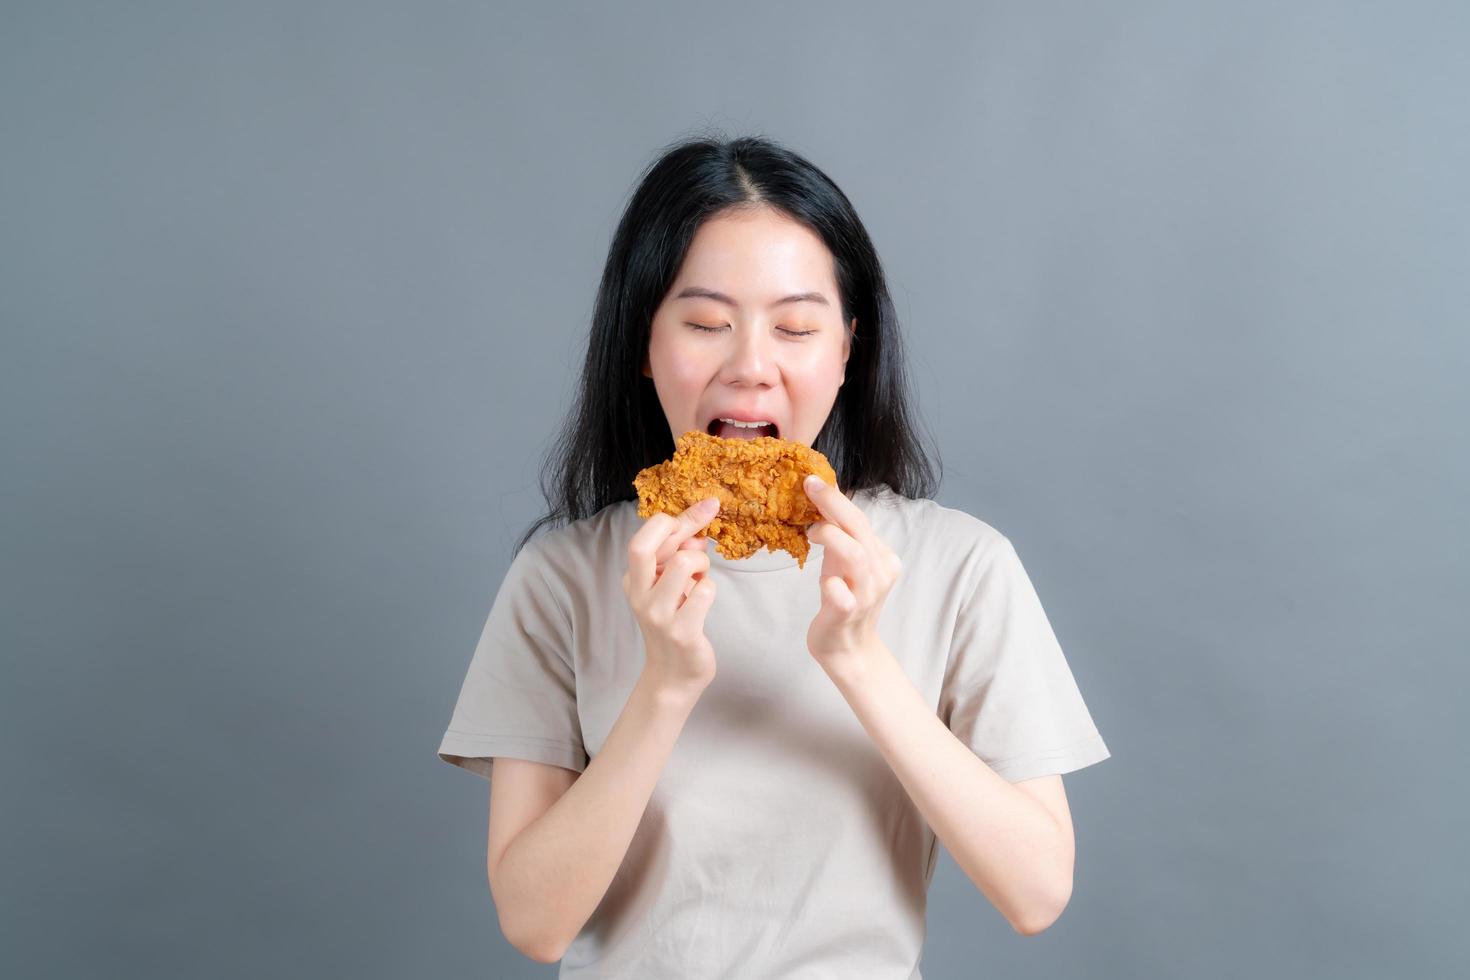 jeune femme asiatique portant un pull avec un visage heureux et aime manger du poulet frit sur fond gris photo